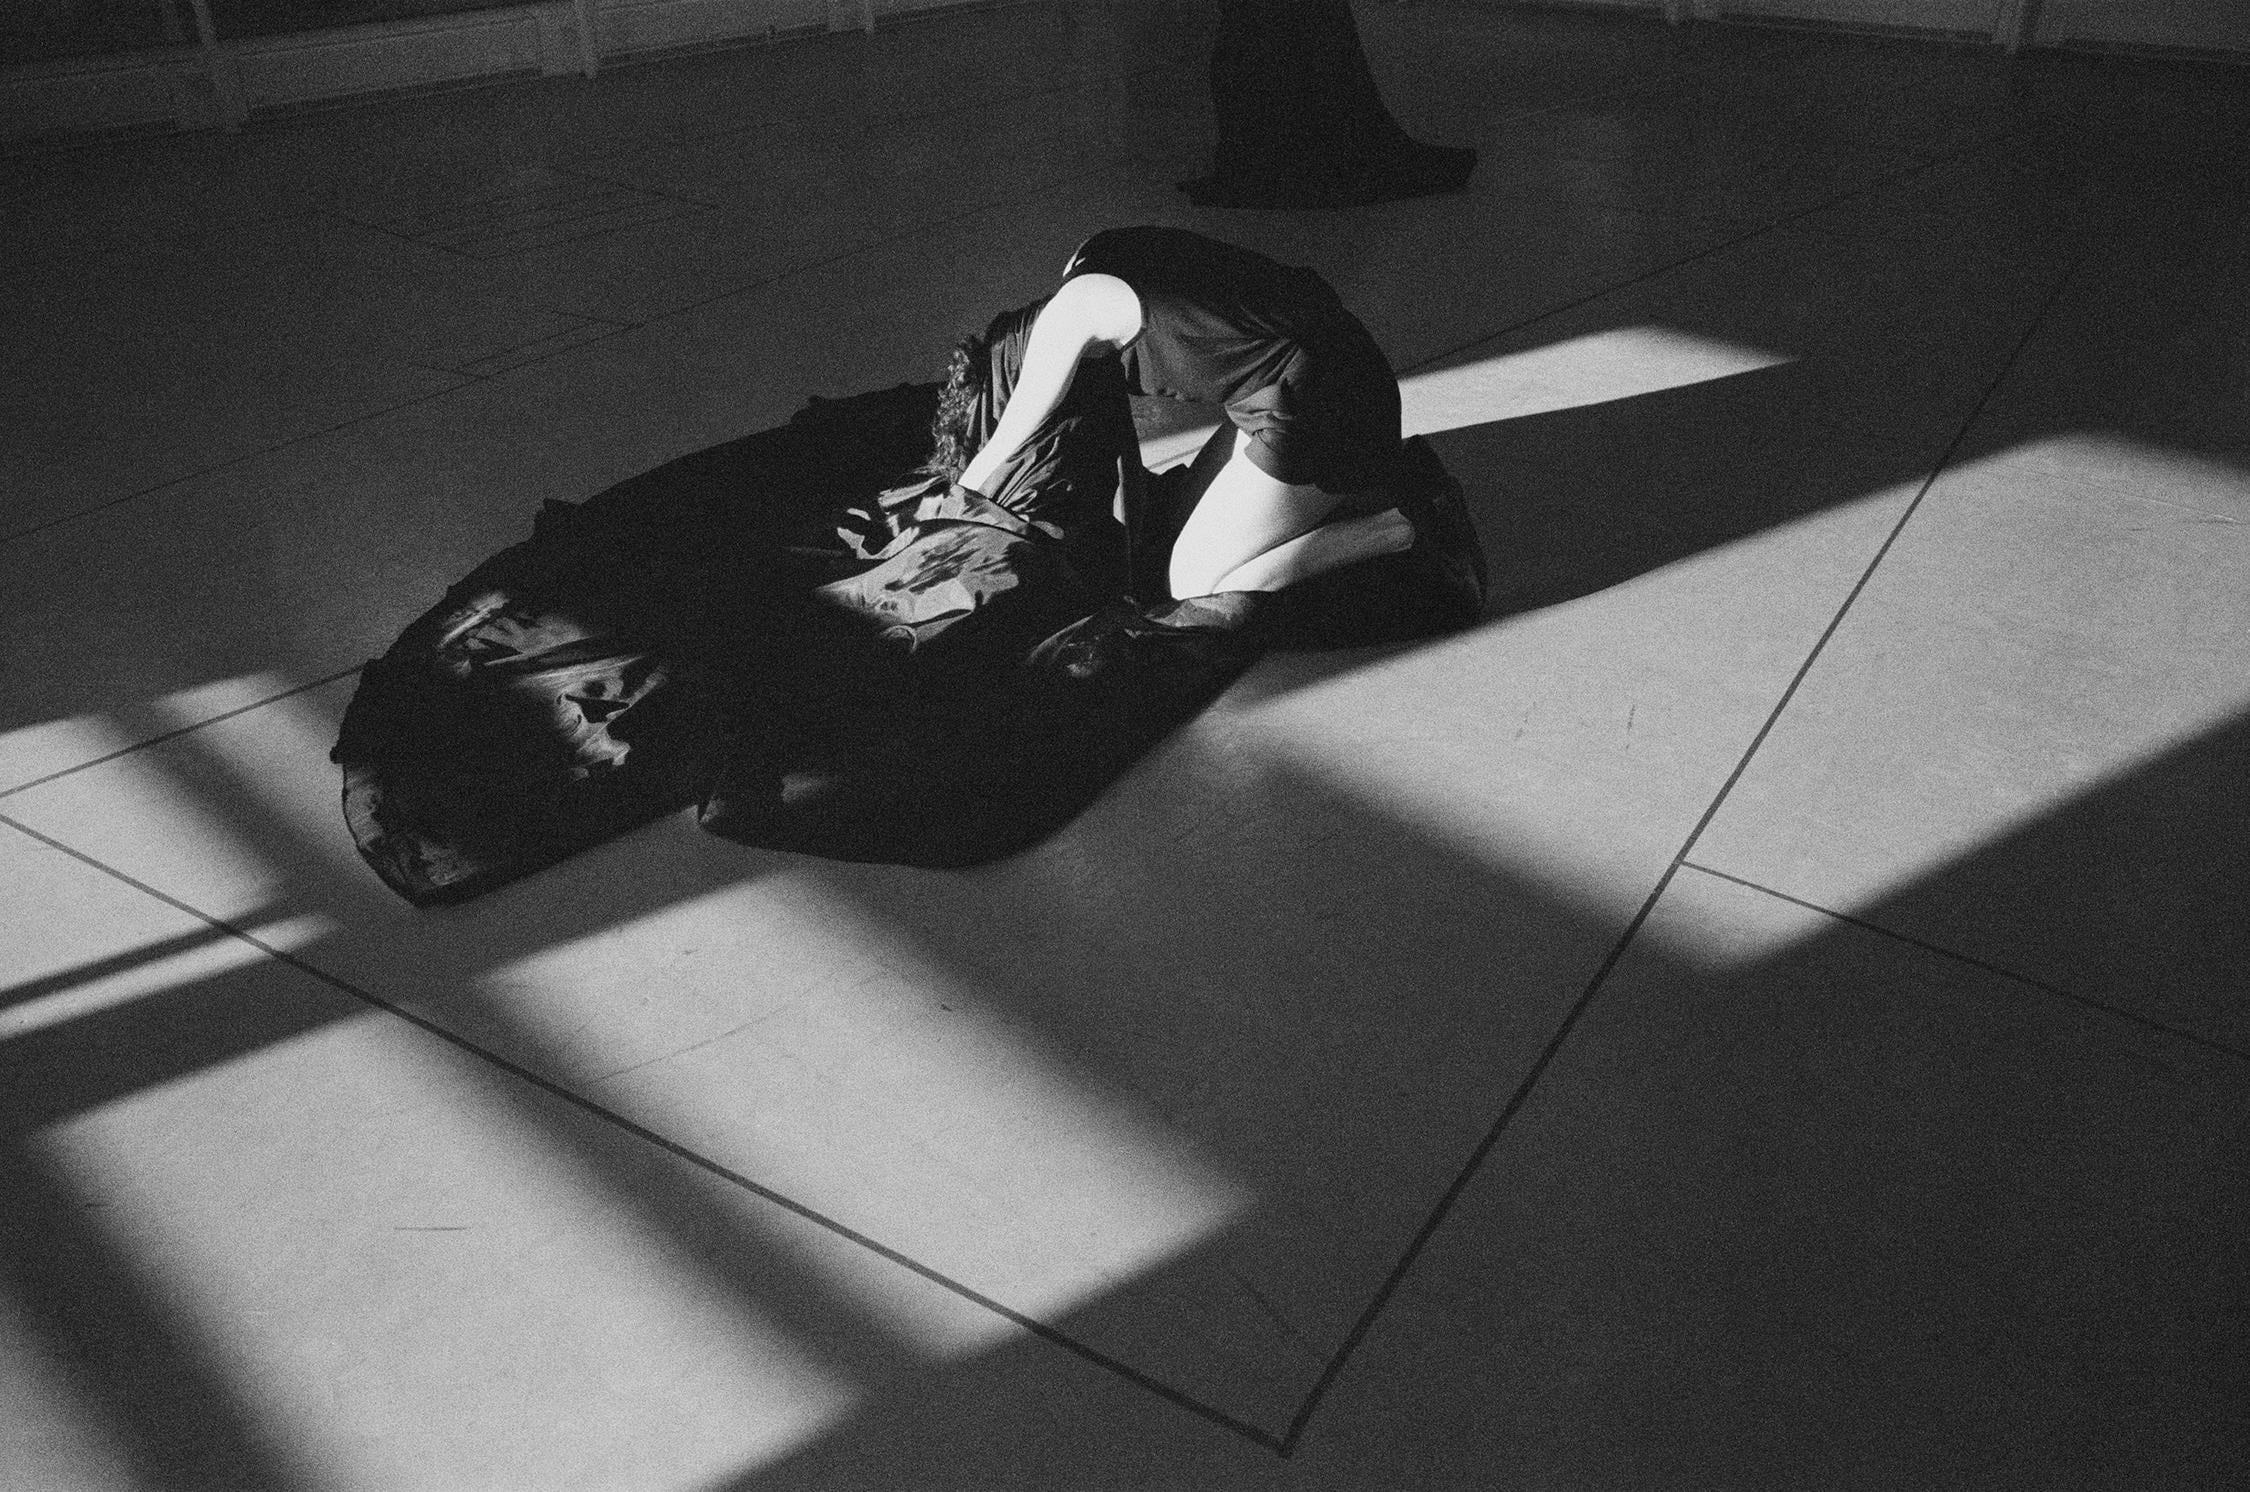 Dancer kneeling on the floor taking off her costume